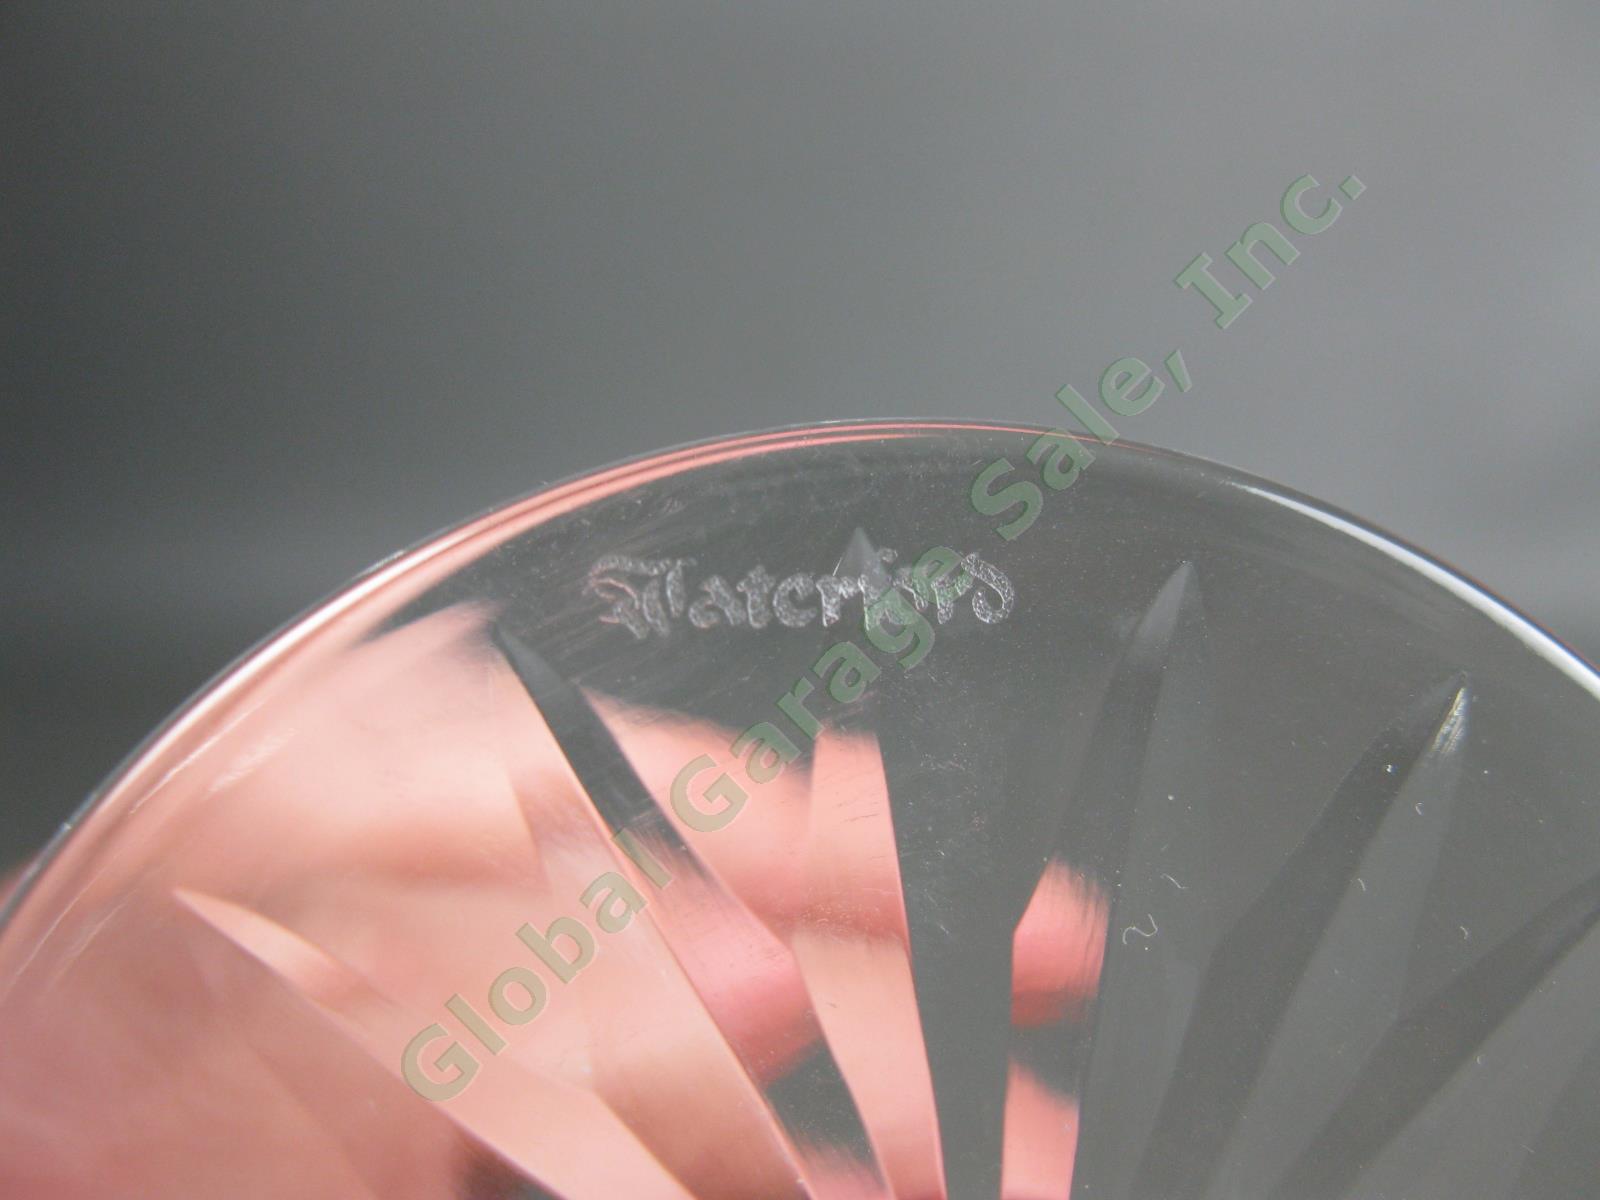 2 Original VTG Waterford Crystal Lismore Claret Wine 5-7/8" Goblet Cut Glass Set 3